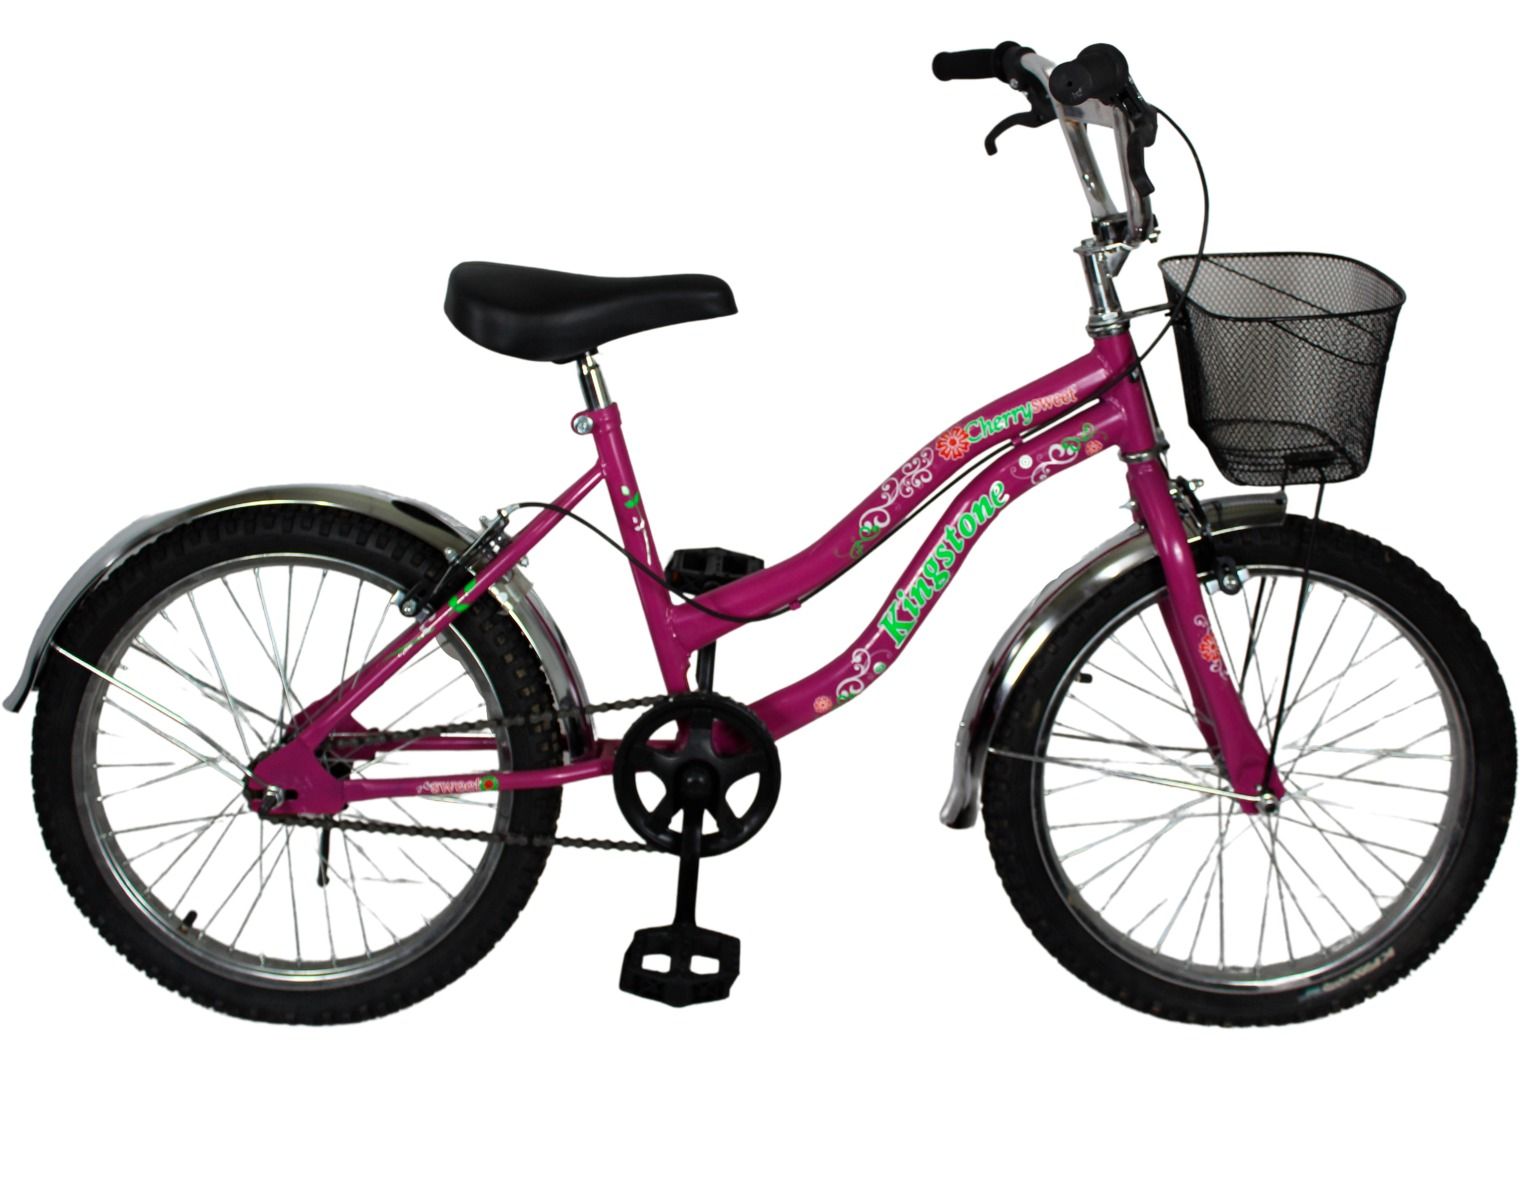 Bicicleta Niña 6-8 Años Tworay 1.0 20 7v Violeta / Rojo 1000002427 RAYMON  Bici